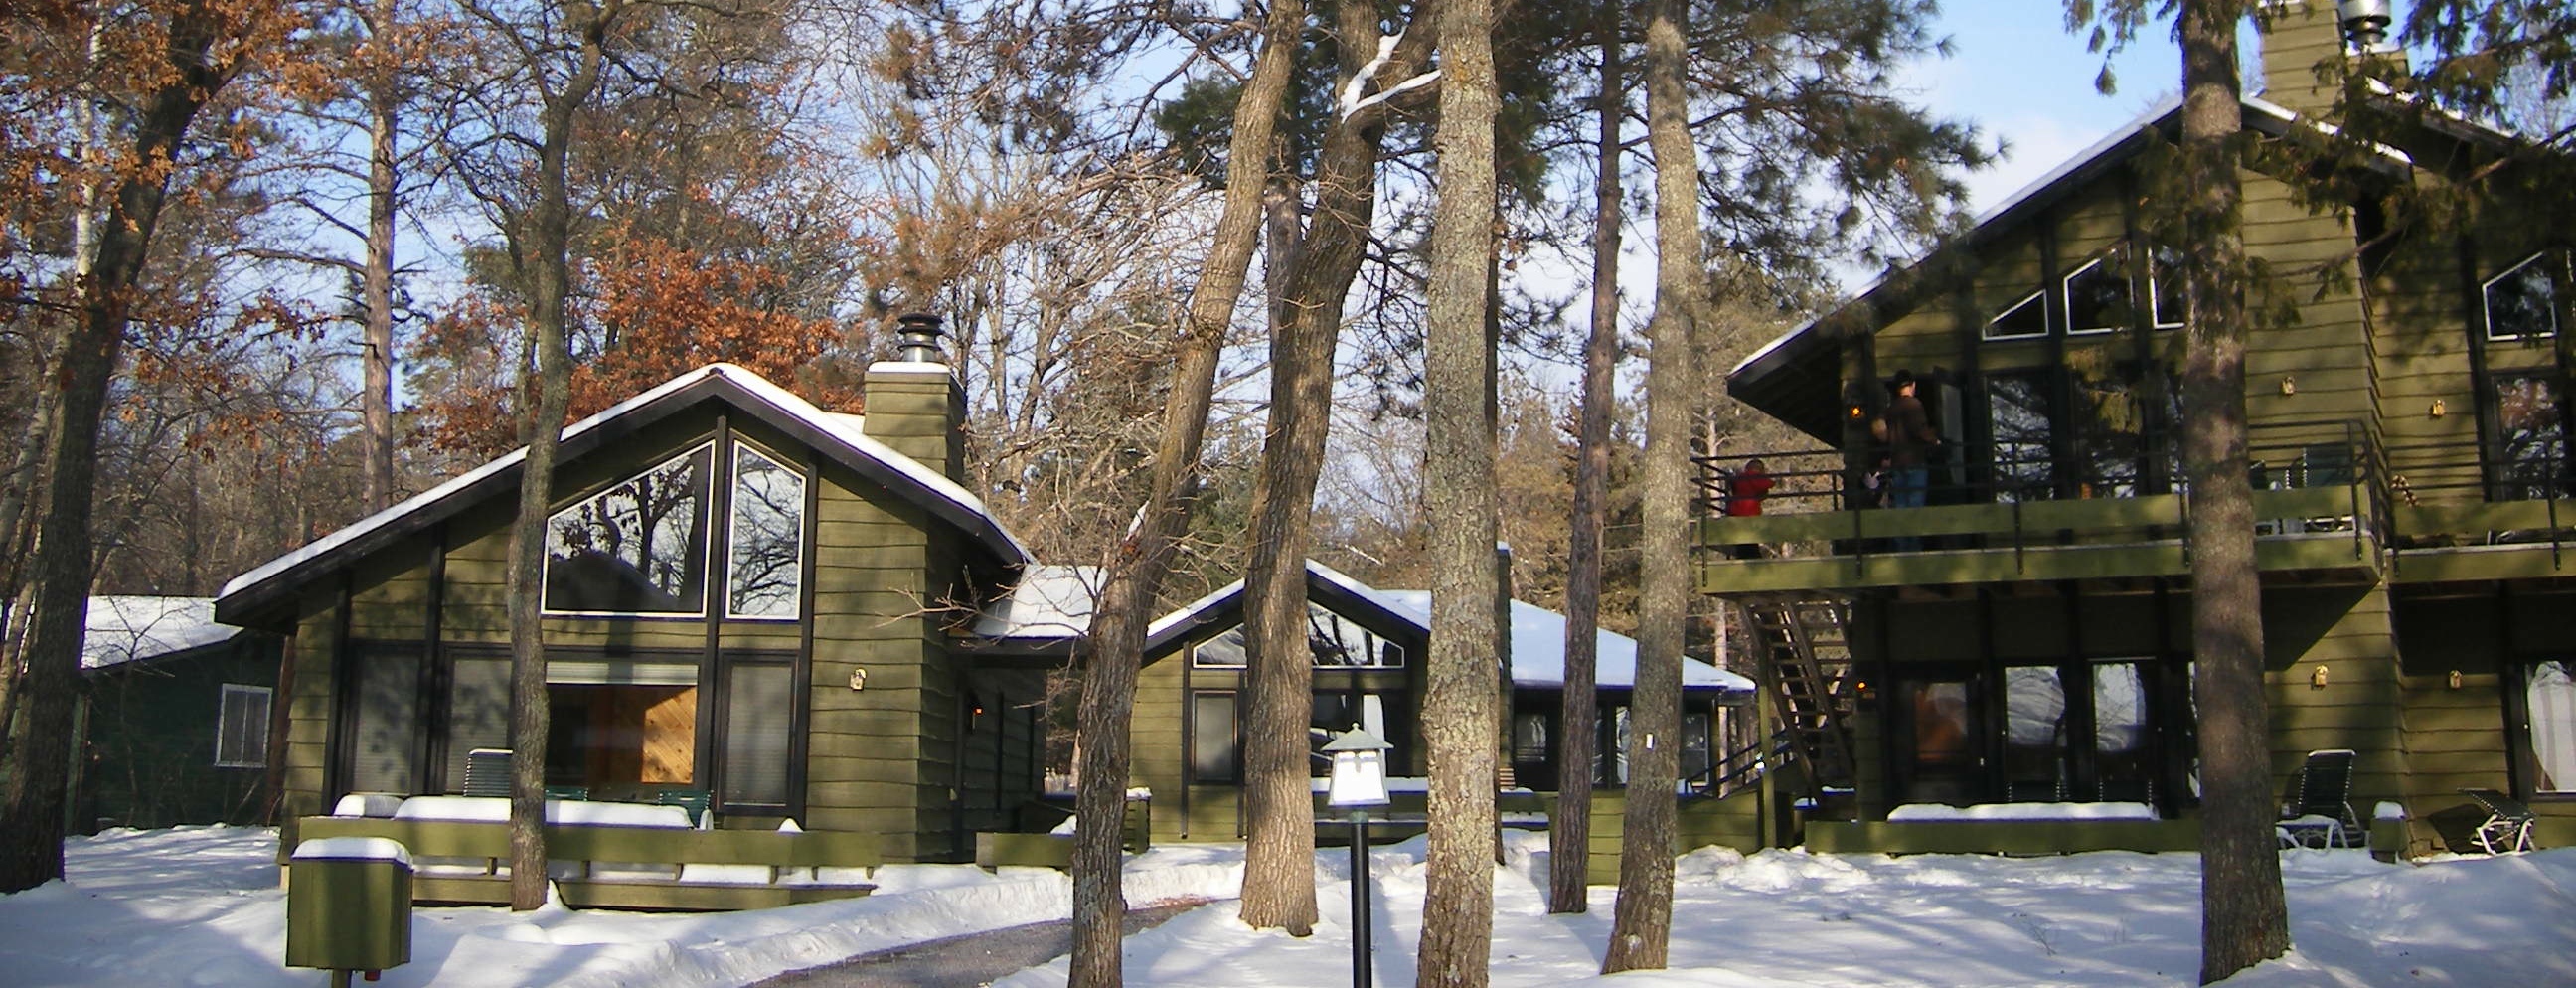 Grandview Lodge cabins